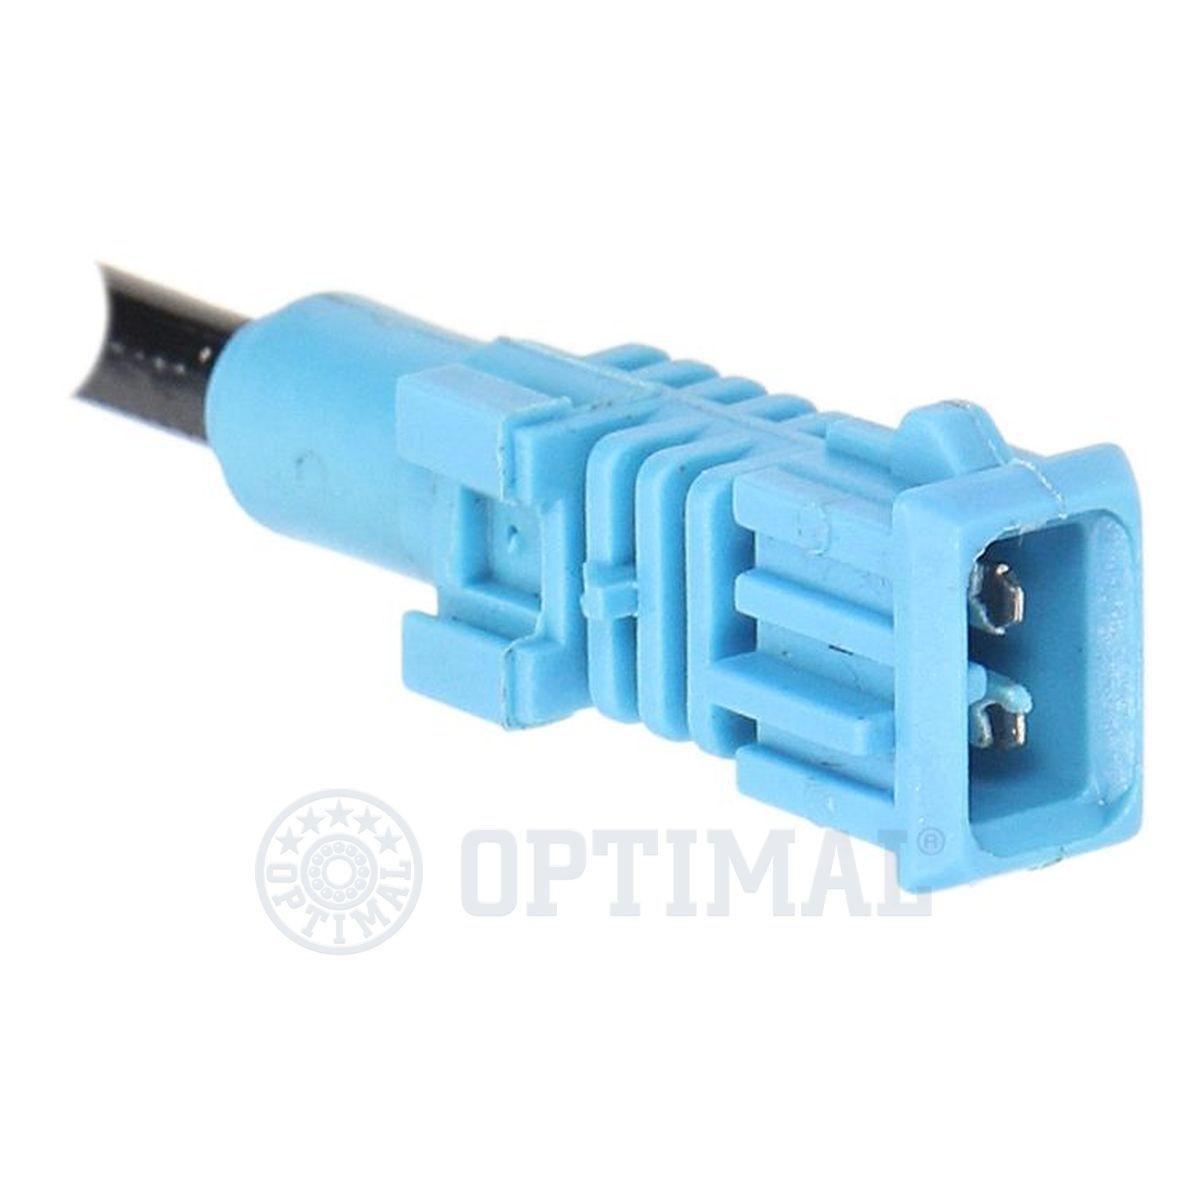 06S016 Anti lock brake sensor OPTIMAL 06-S016 review and test